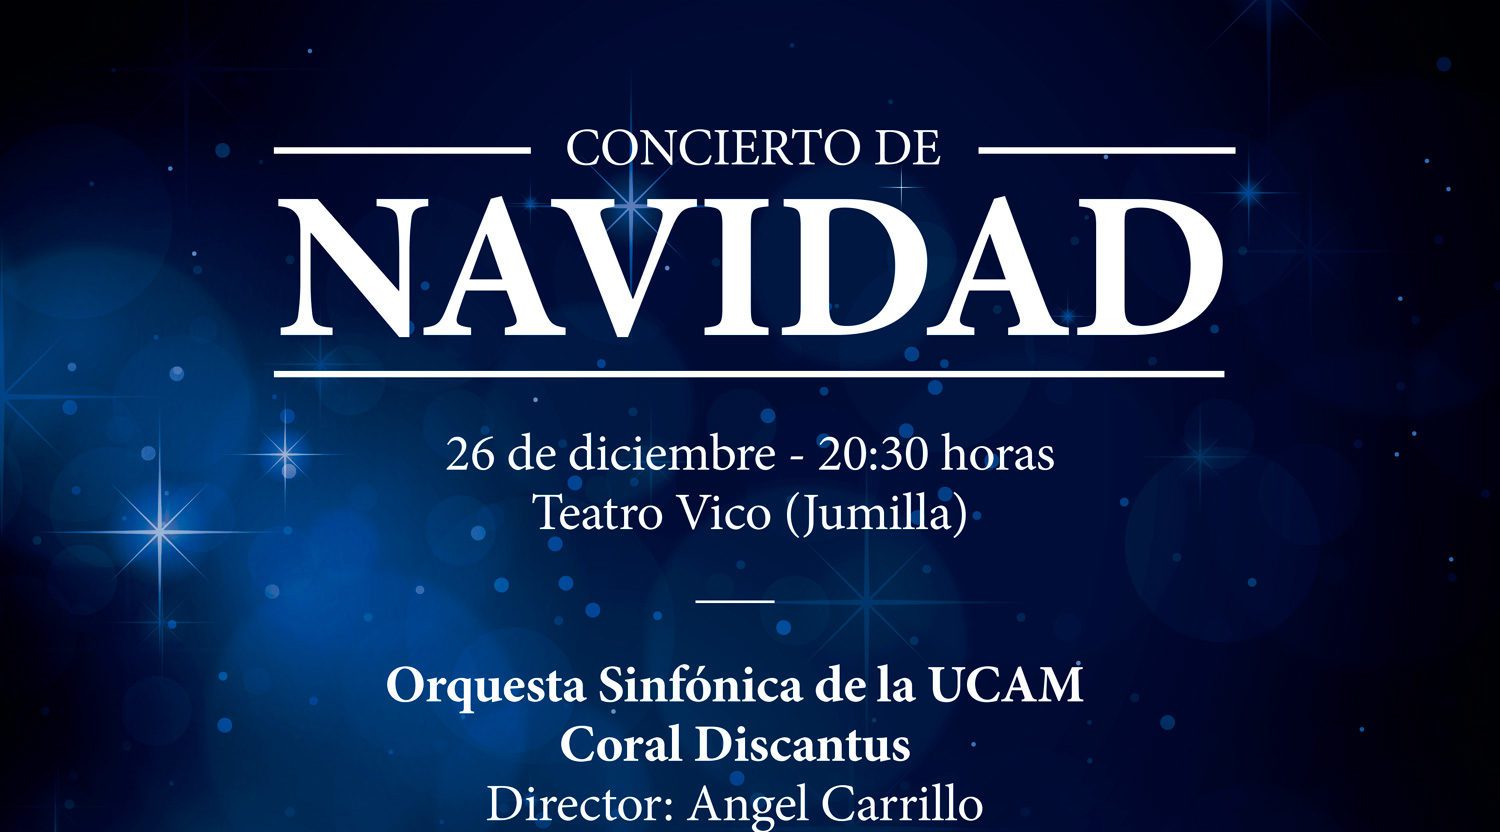 La Orquesta Sinfónica de la UCAM y la Coral Discantus ofrecerán un concierto de Navidad el 26 de diciembre